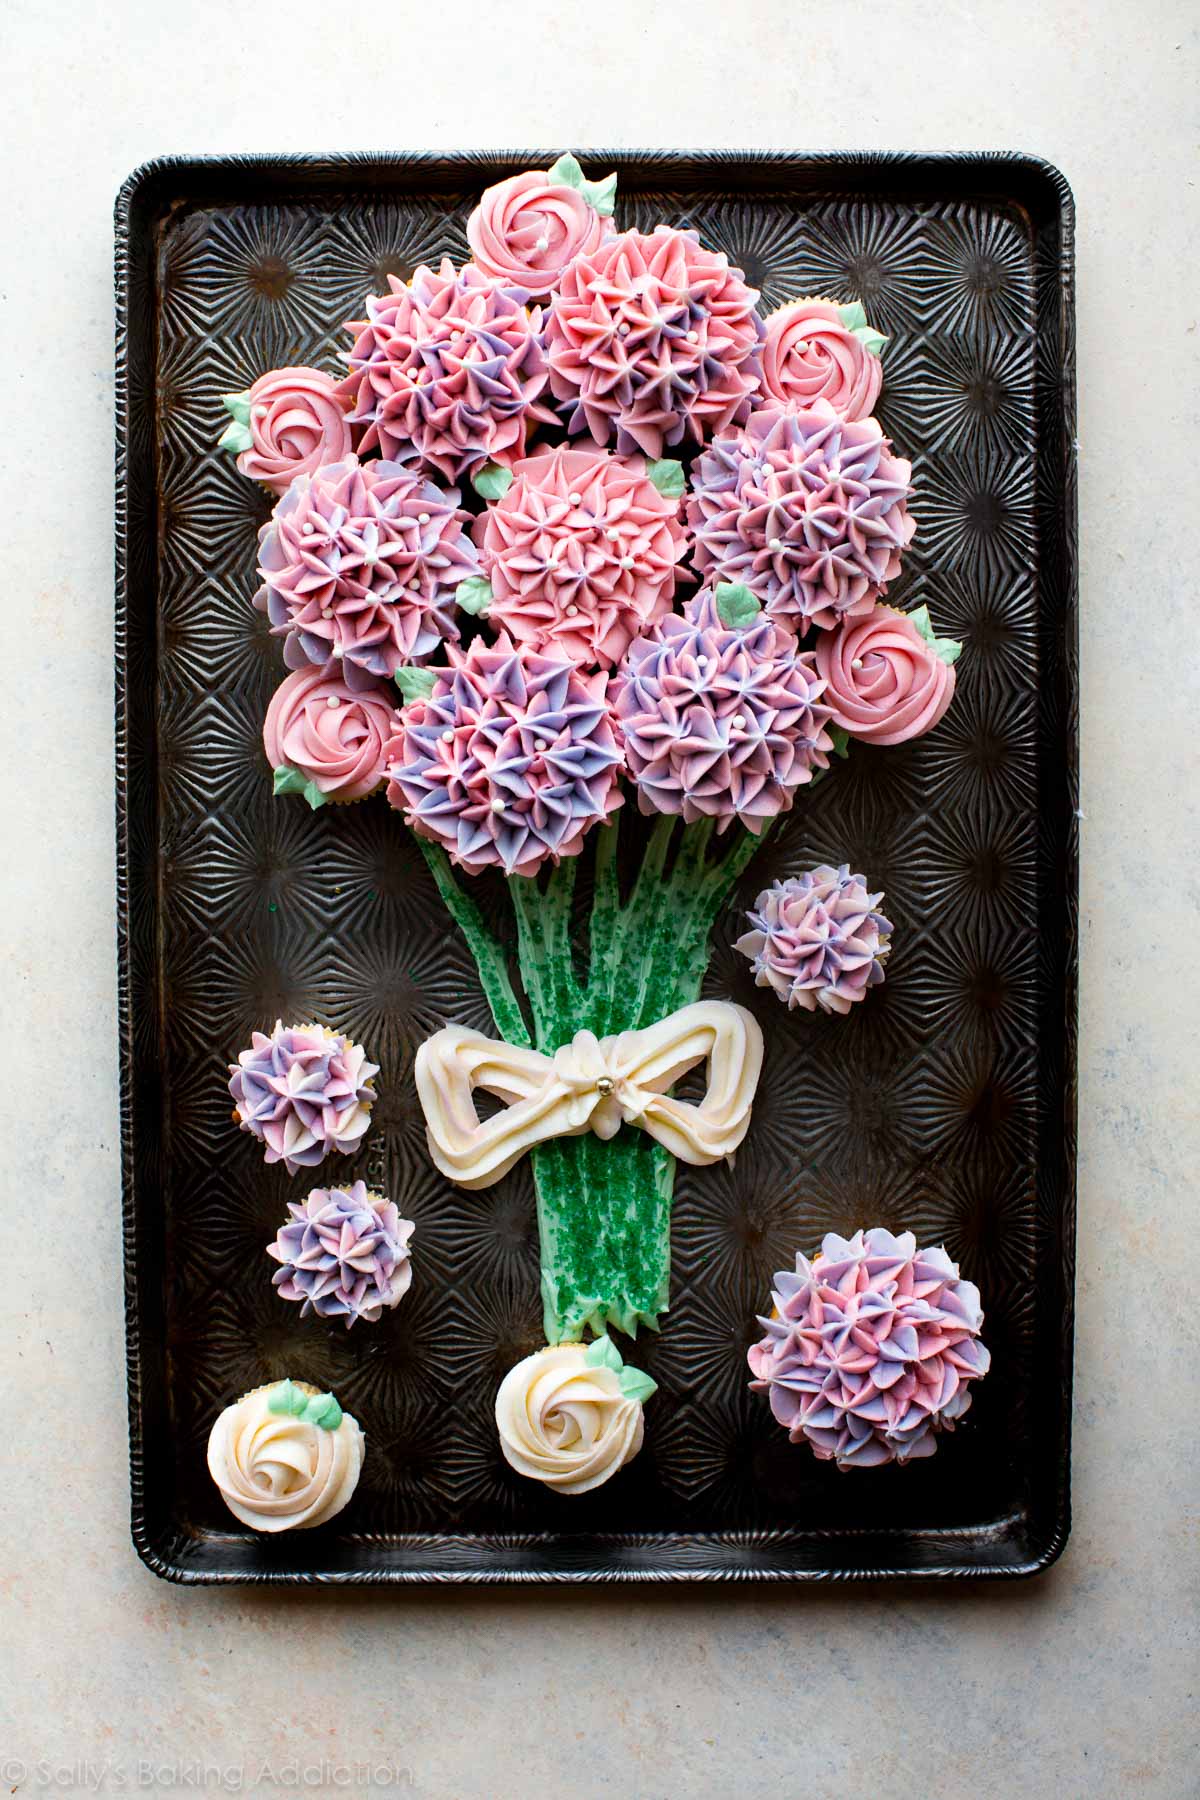 cupcake bouquet on a baking sheet